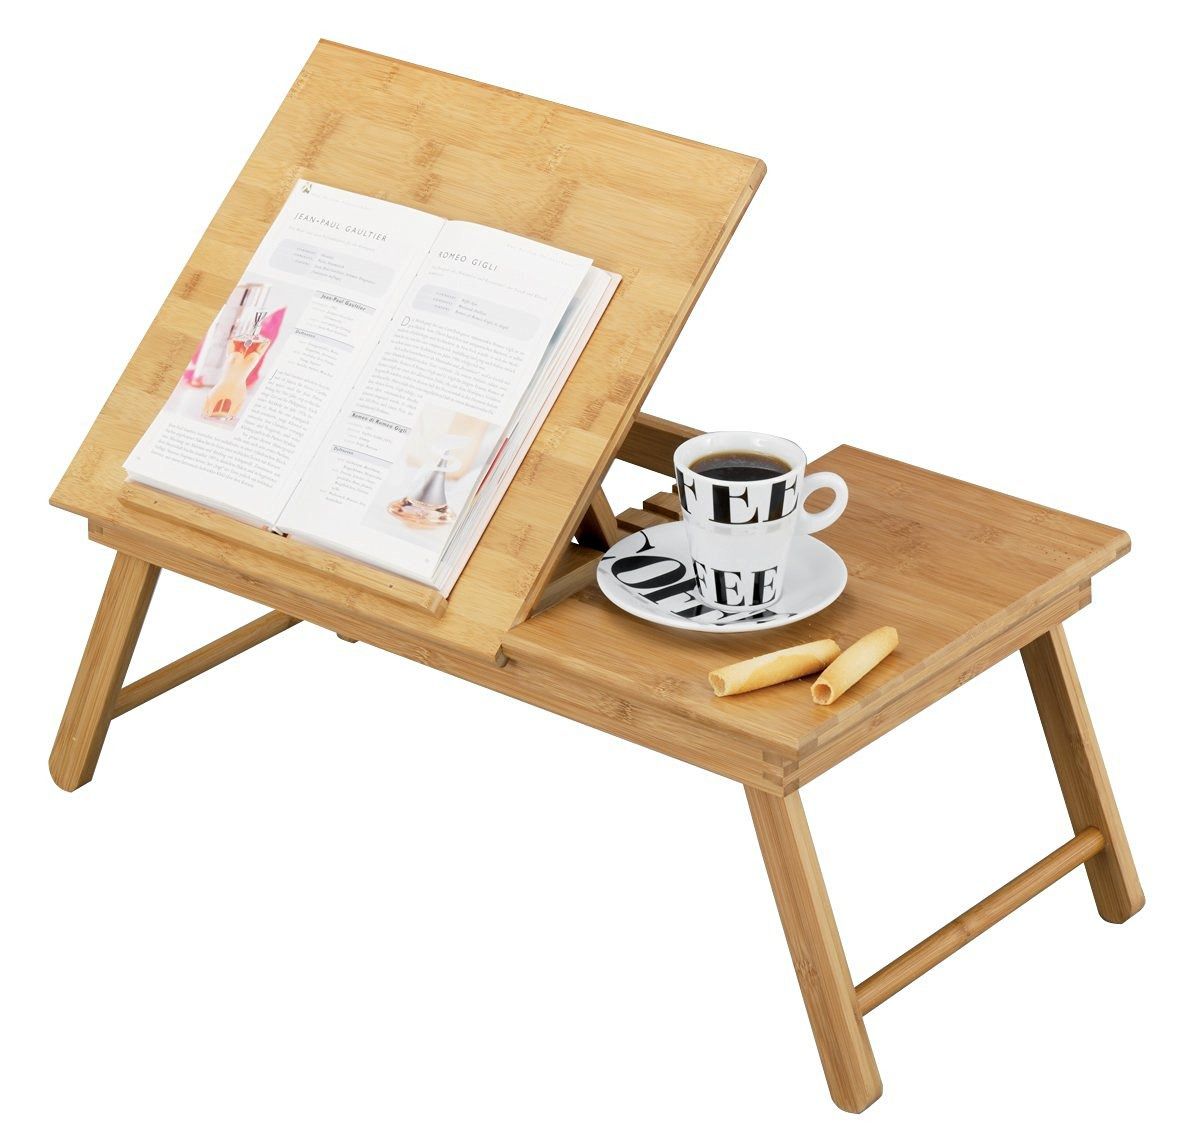 Snídaňový stolek, držák na knížku, 55x33 cm, ZELLER - EMAKO.CZ s.r.o.